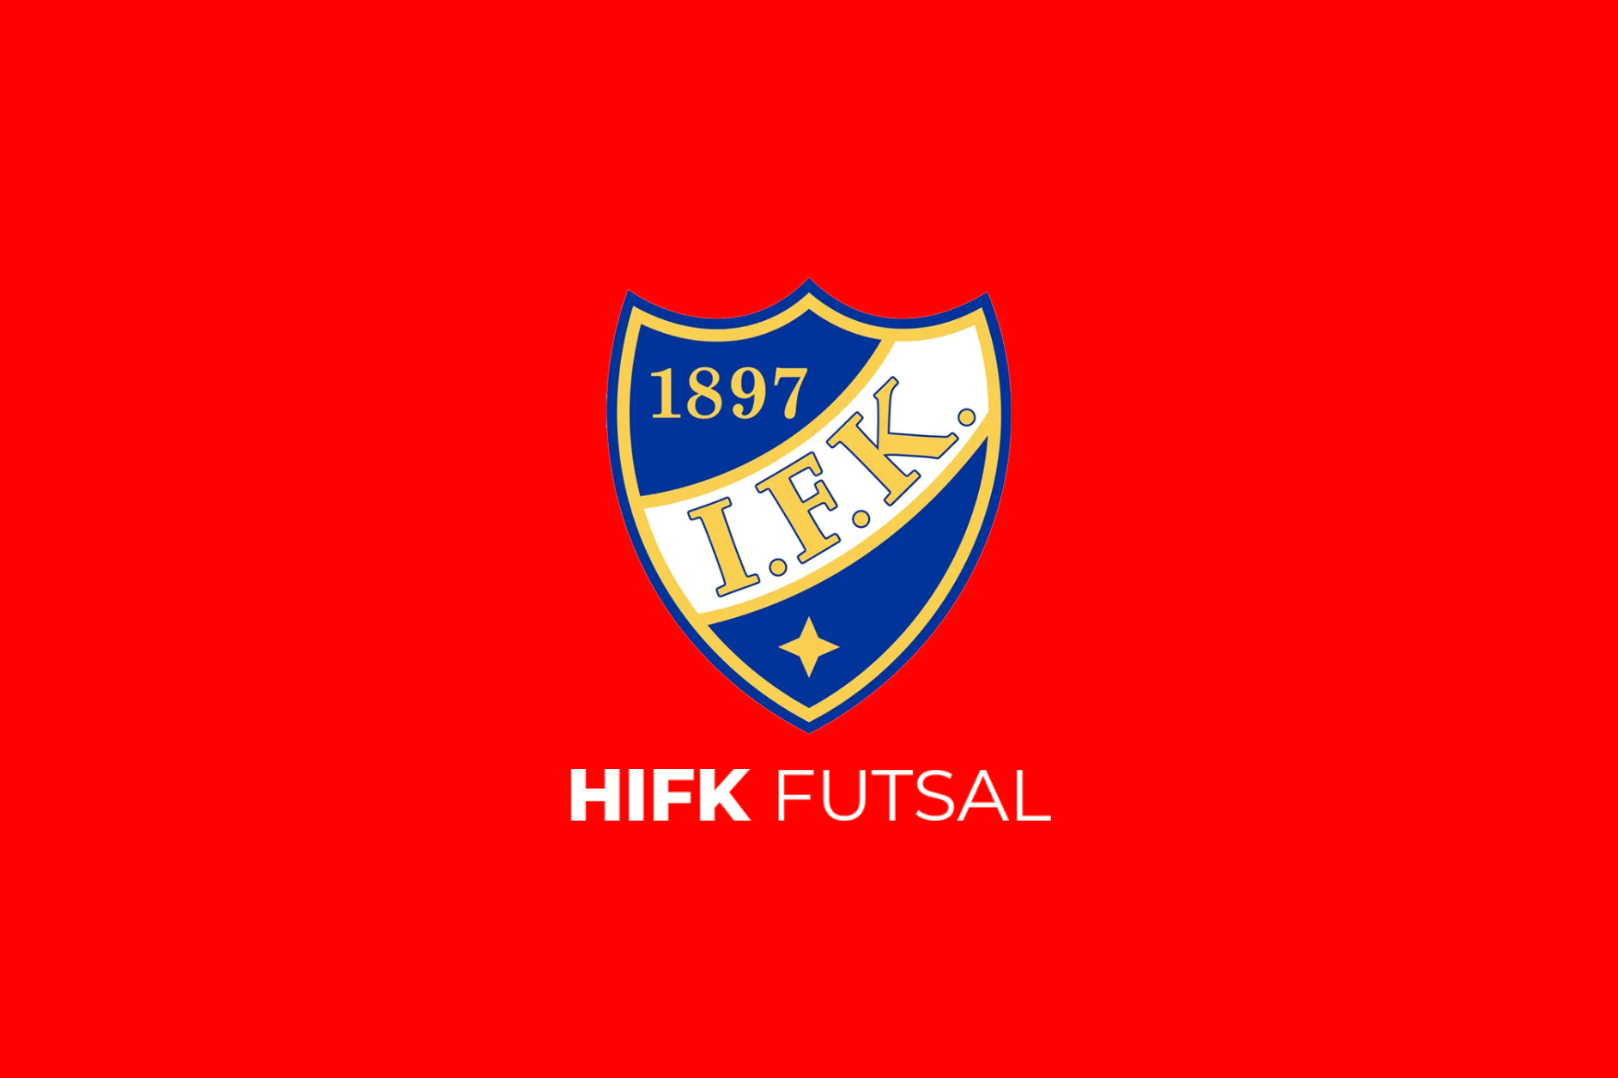 HIFK:n miesten futsalin edustusjoukkue etsii uutta päävalmentajaa